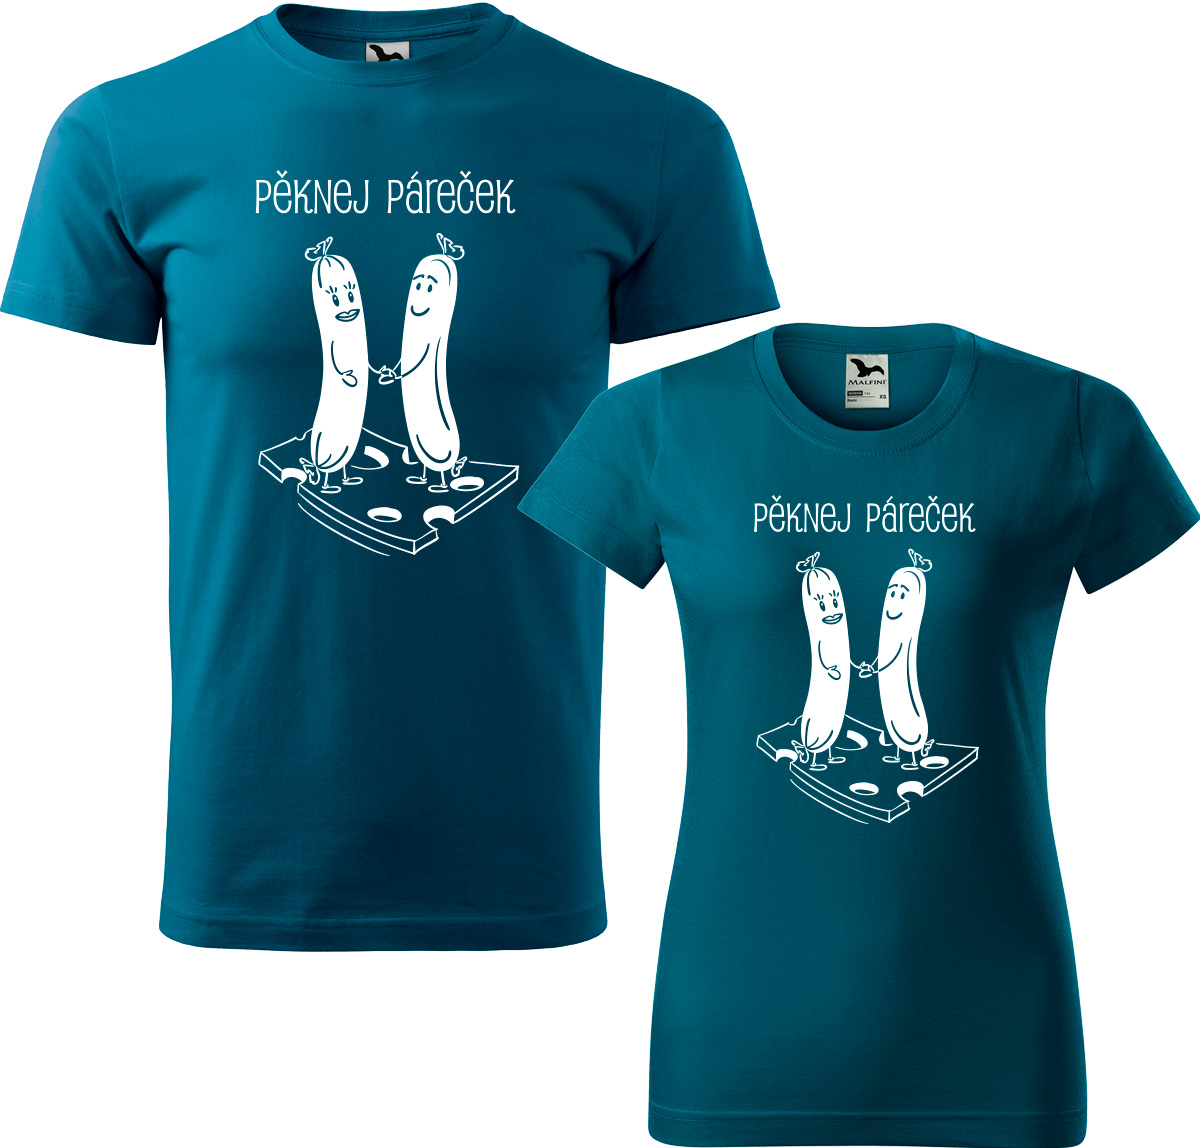 Trička pro páry - Pěknej páreček Barva: Petrolejová (93), Velikost dámské tričko: XL, Velikost pánské tričko: XL